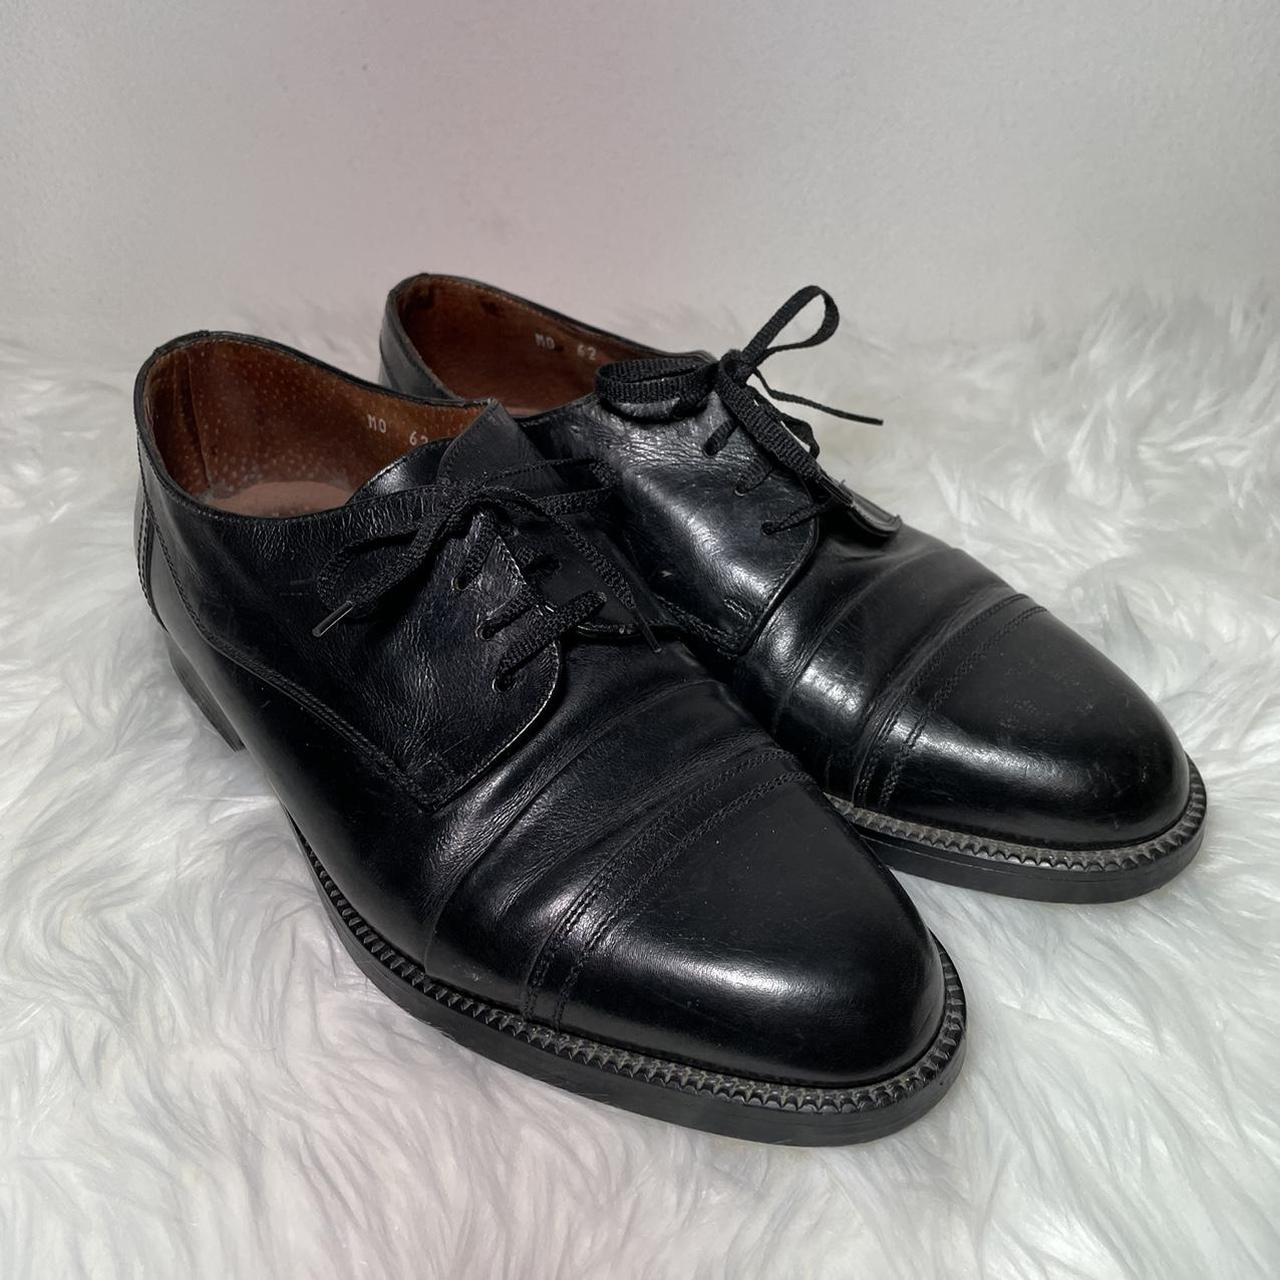 Giorgio Brutini Private Collection Black Leather... - Depop